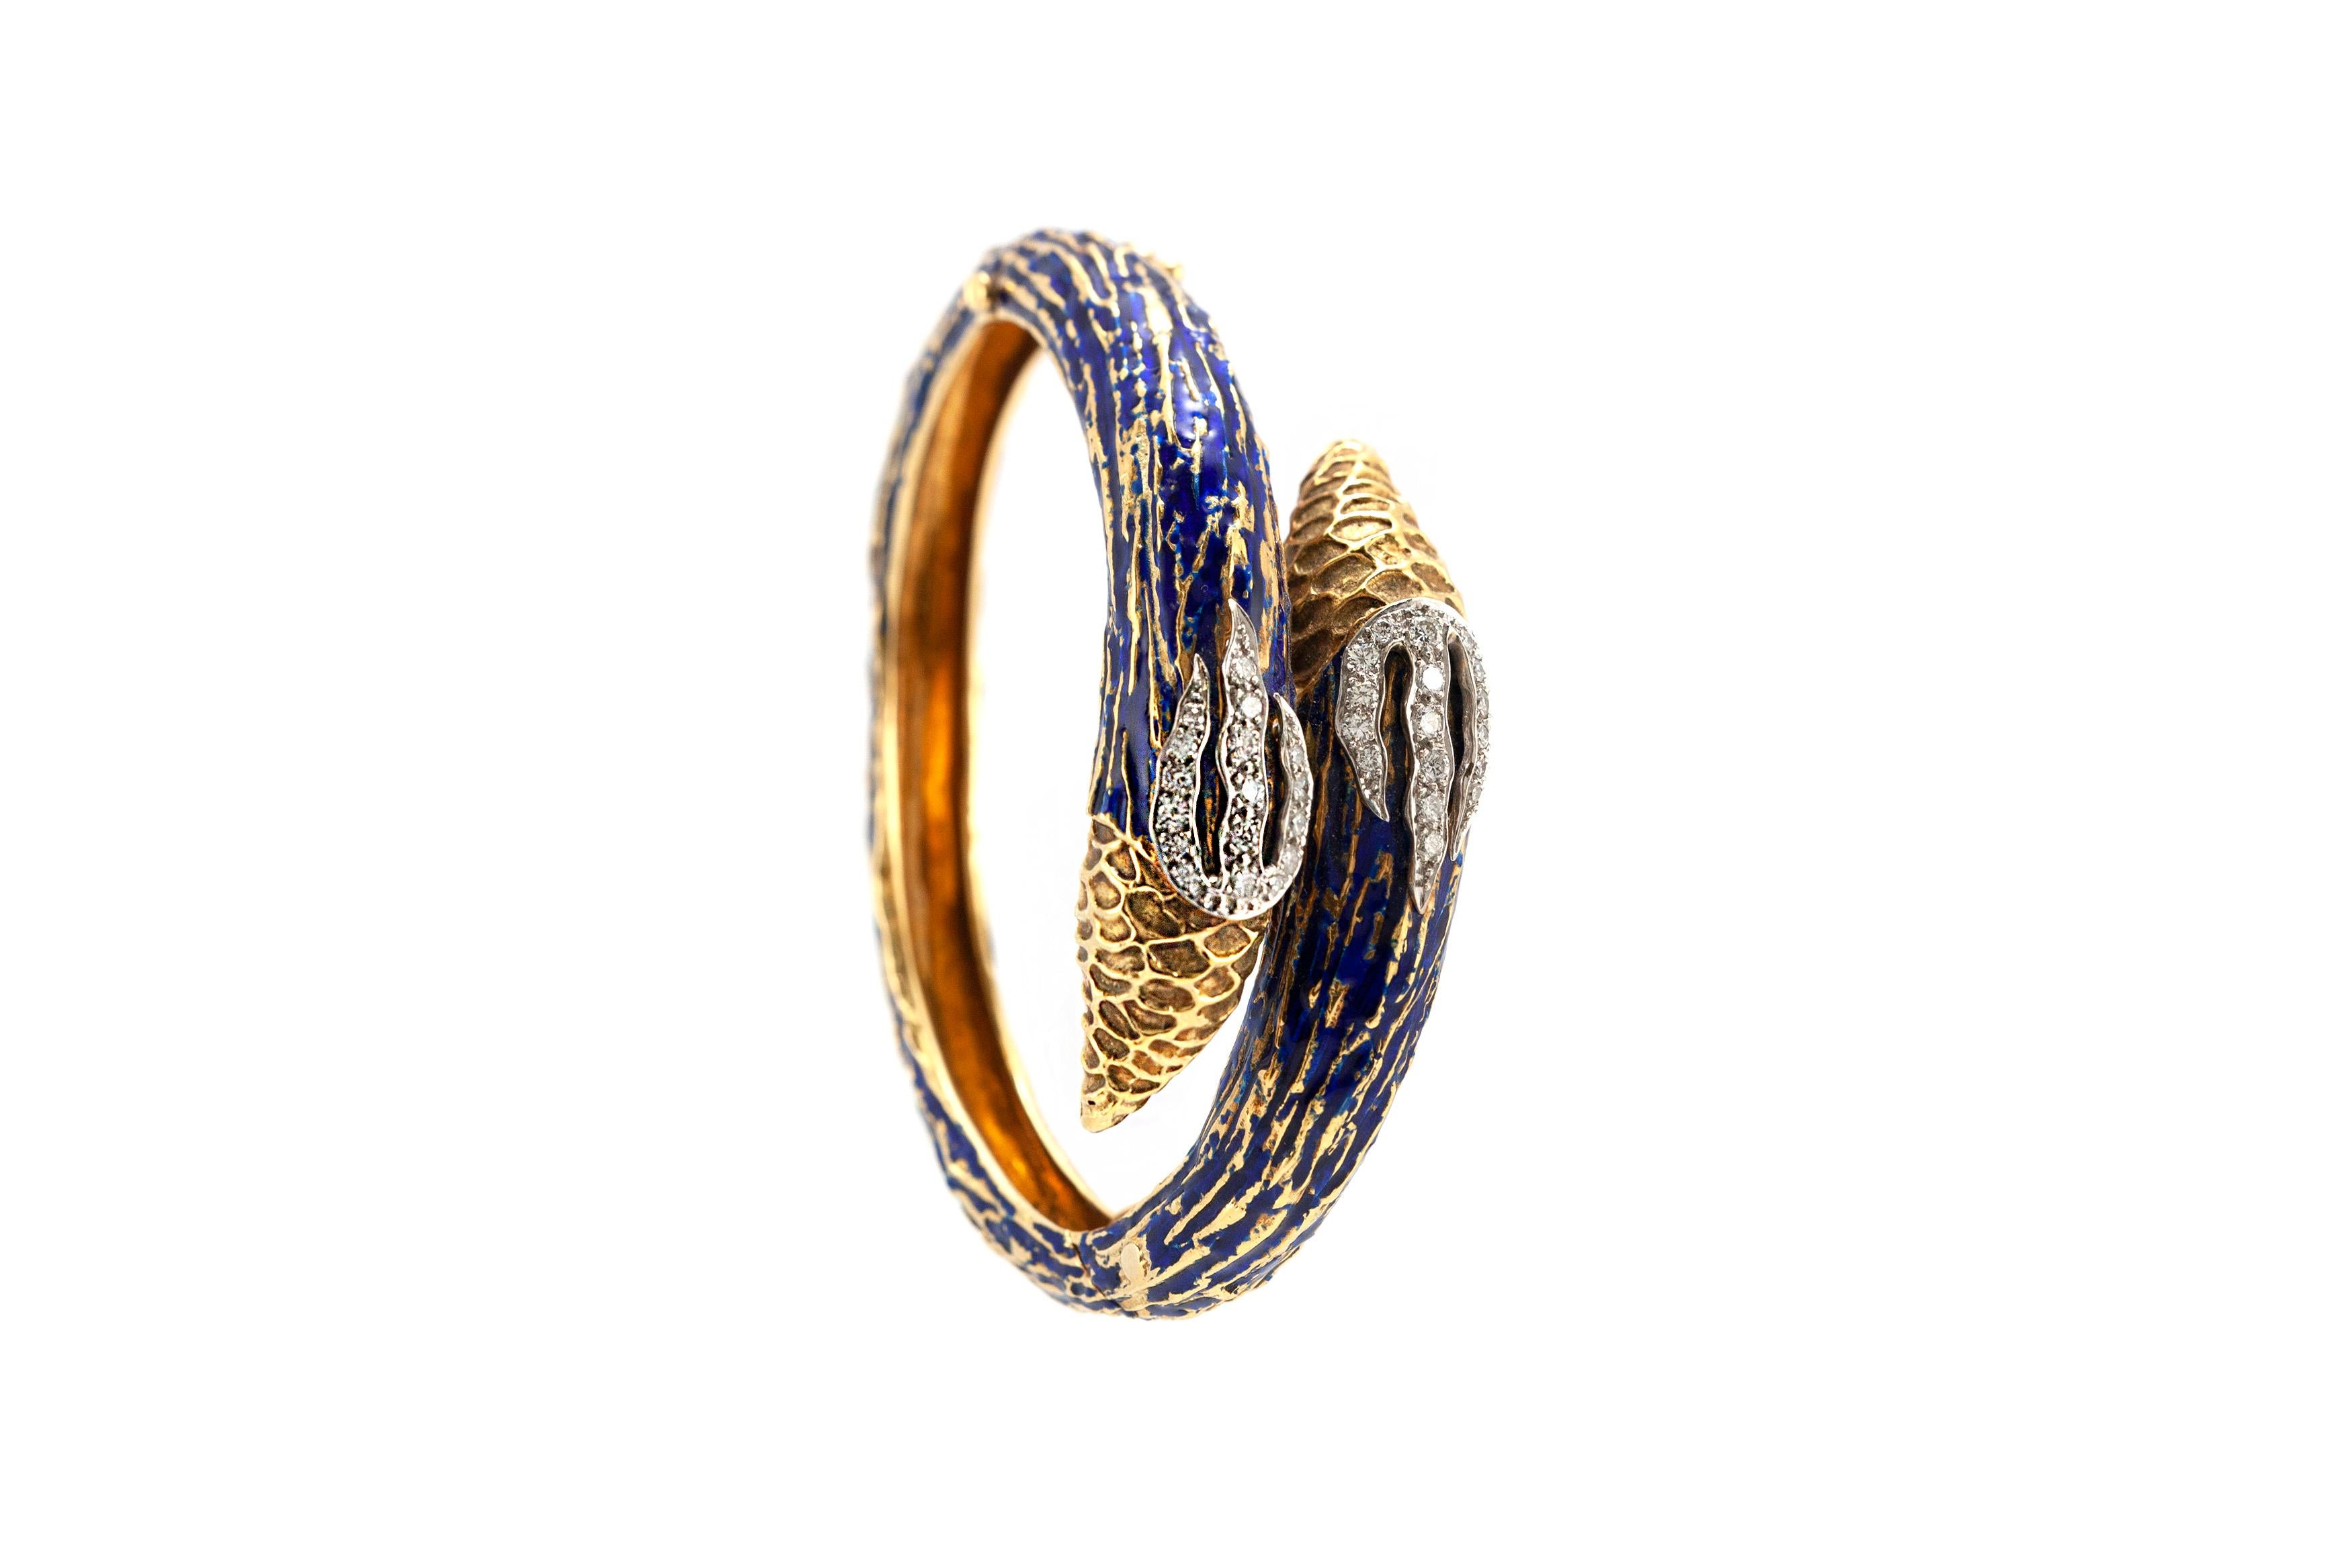 Le bracelet est finement travaillé en or jaune 18k avec des diamants pesant approximativement 1,80 carat au total et de l'émail bleu. 